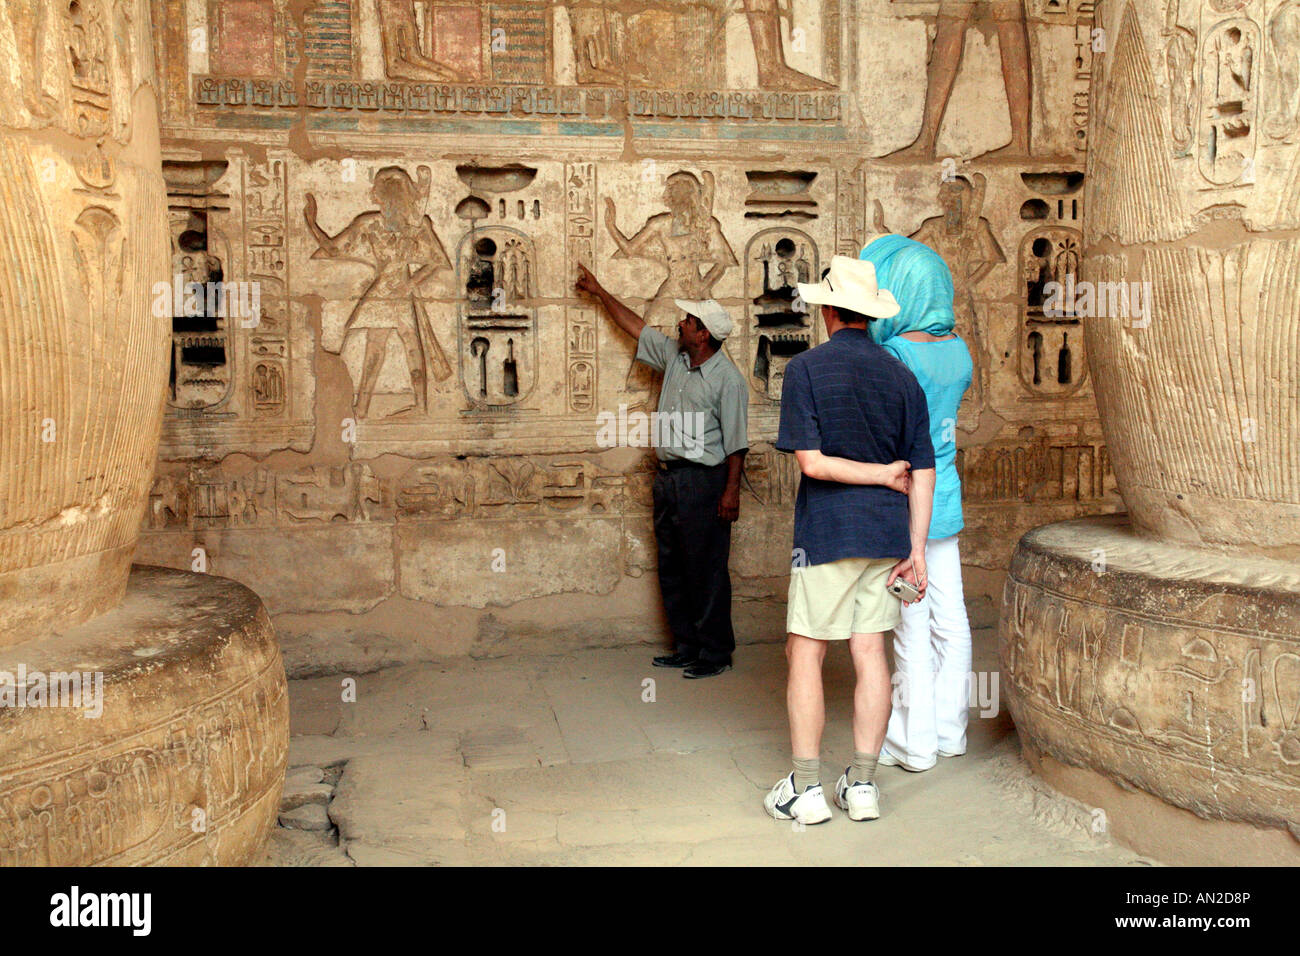 Ribera Occidental, el Templo de Ramsés III relieves pintados Foto de stock